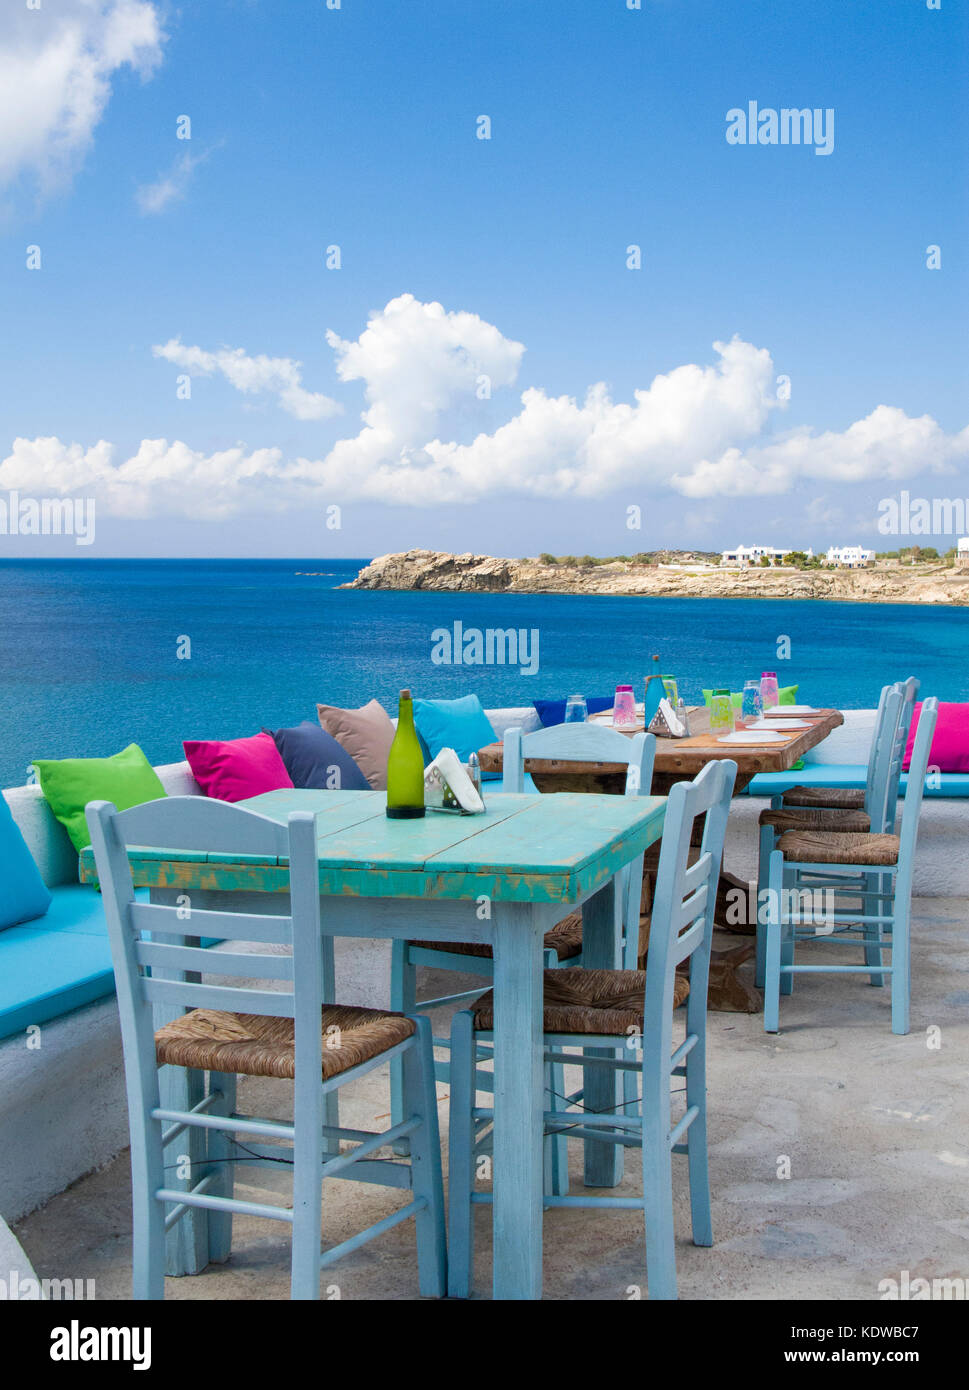 Anna's Place, élégant bar de plage de Paradise beach, Mykonos, Cyclades, Mer Égée, Grèce, Europe Banque D'Images